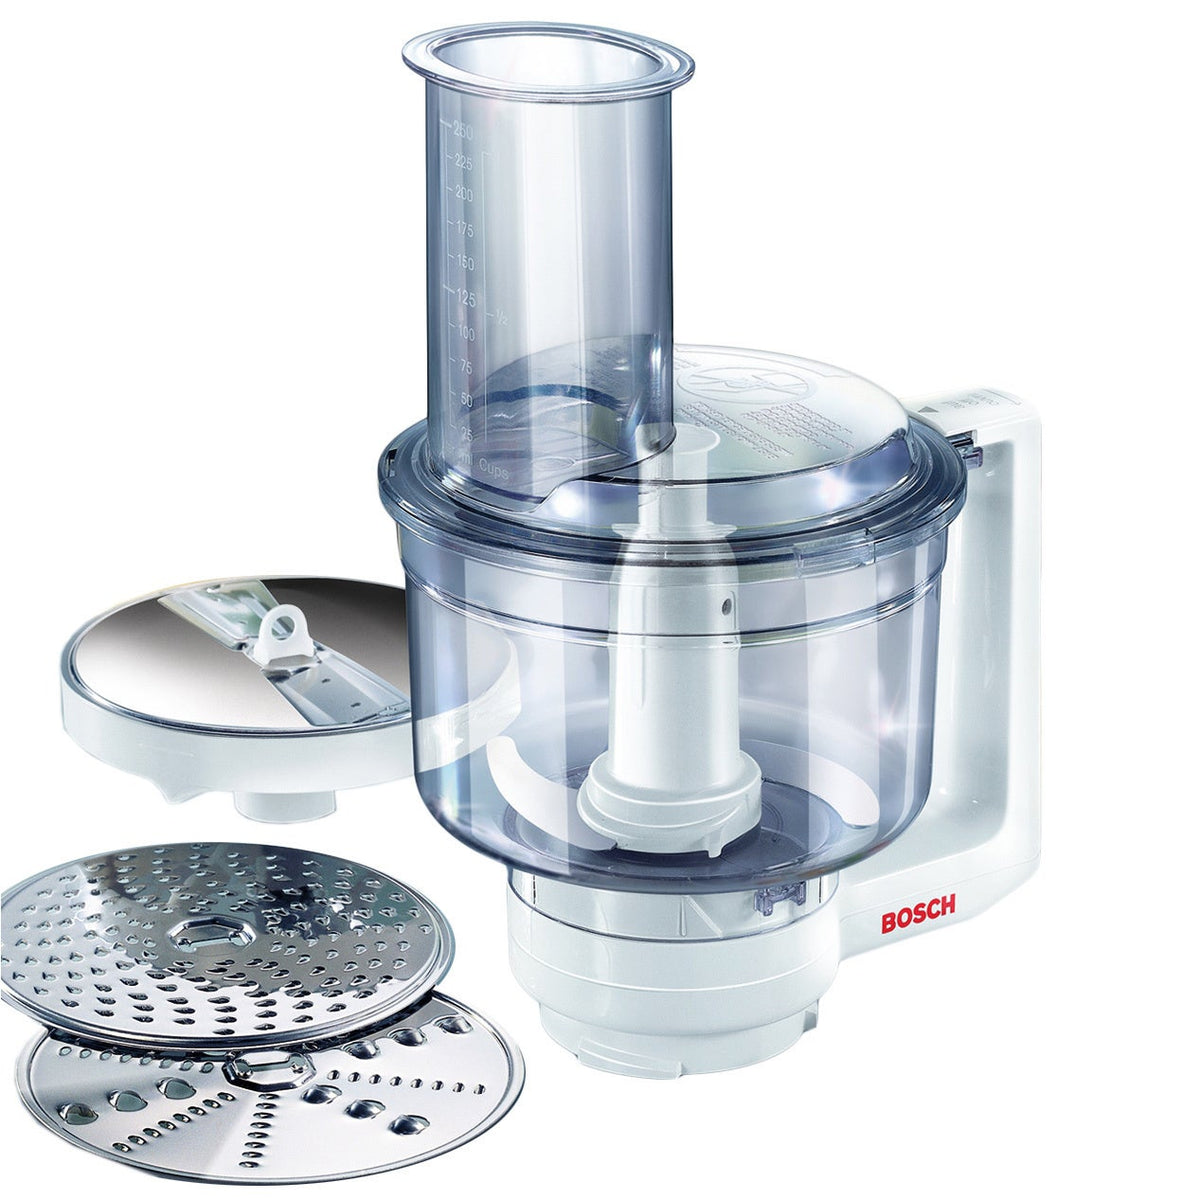 Mixer BOSCH MFQ 3555 kitchen mixer mixers Planetary Food processor